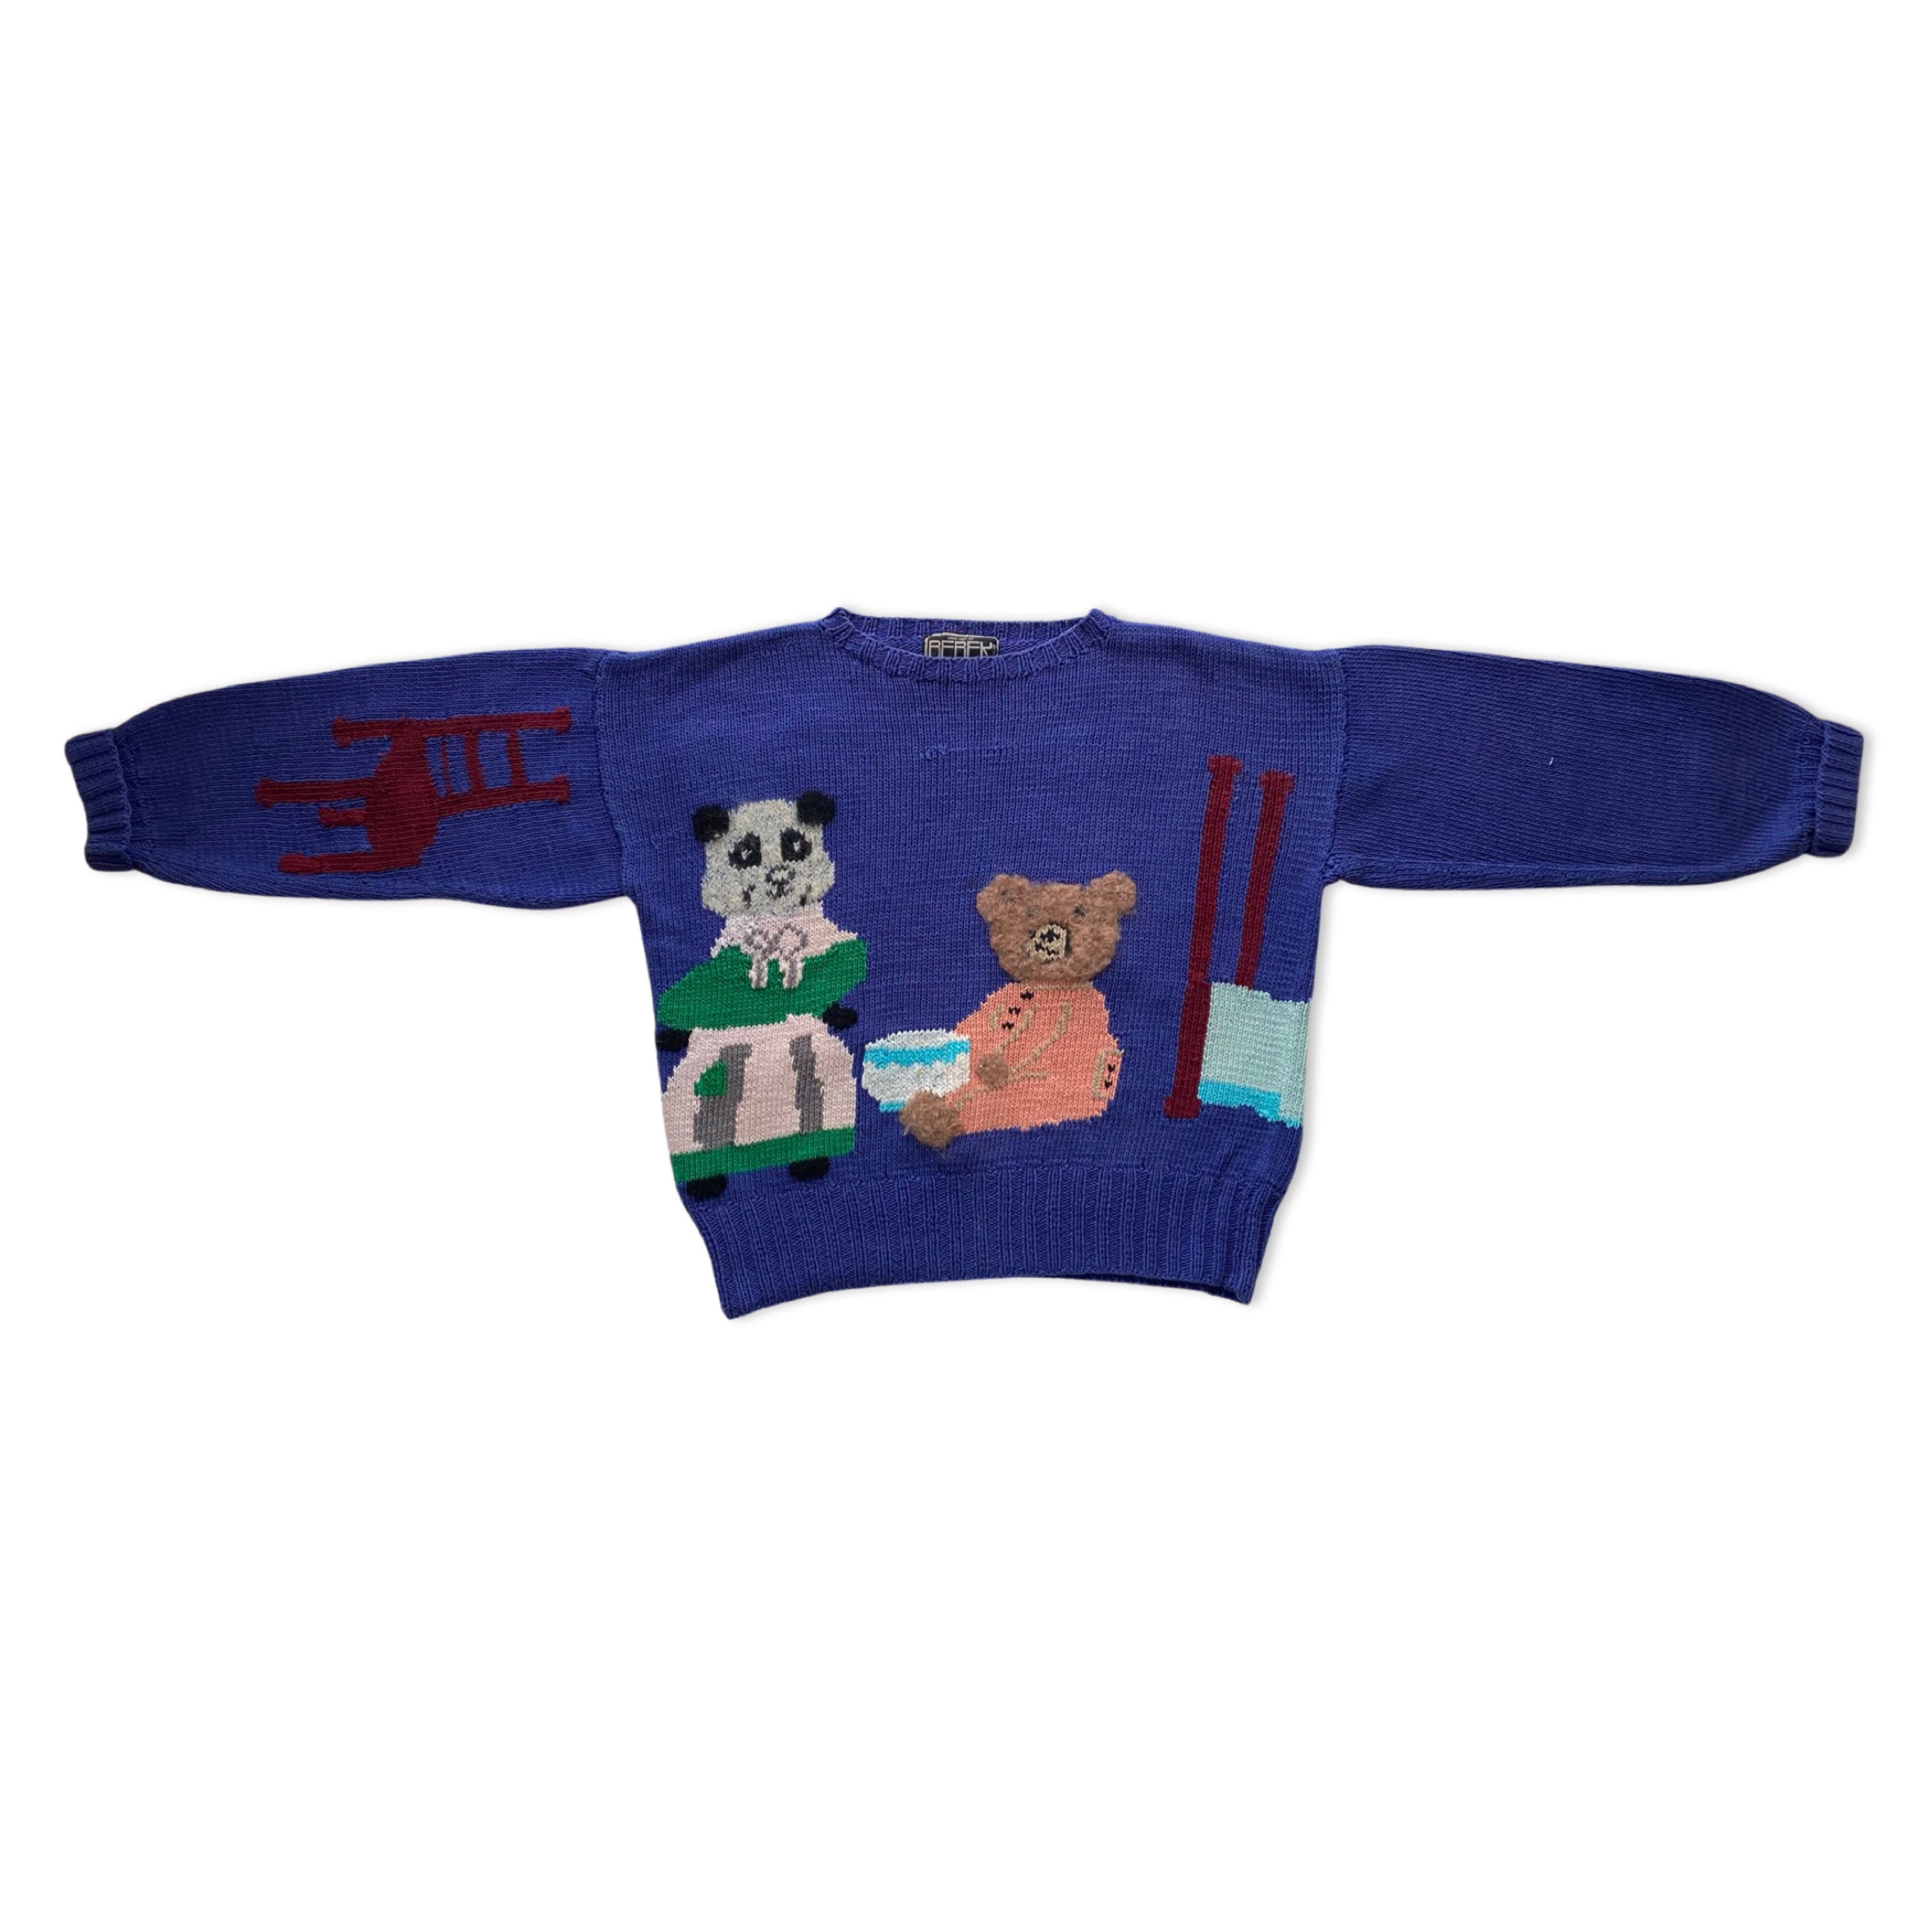 Berek hand knit sweater with scene of Goldilocks and the Three Bears